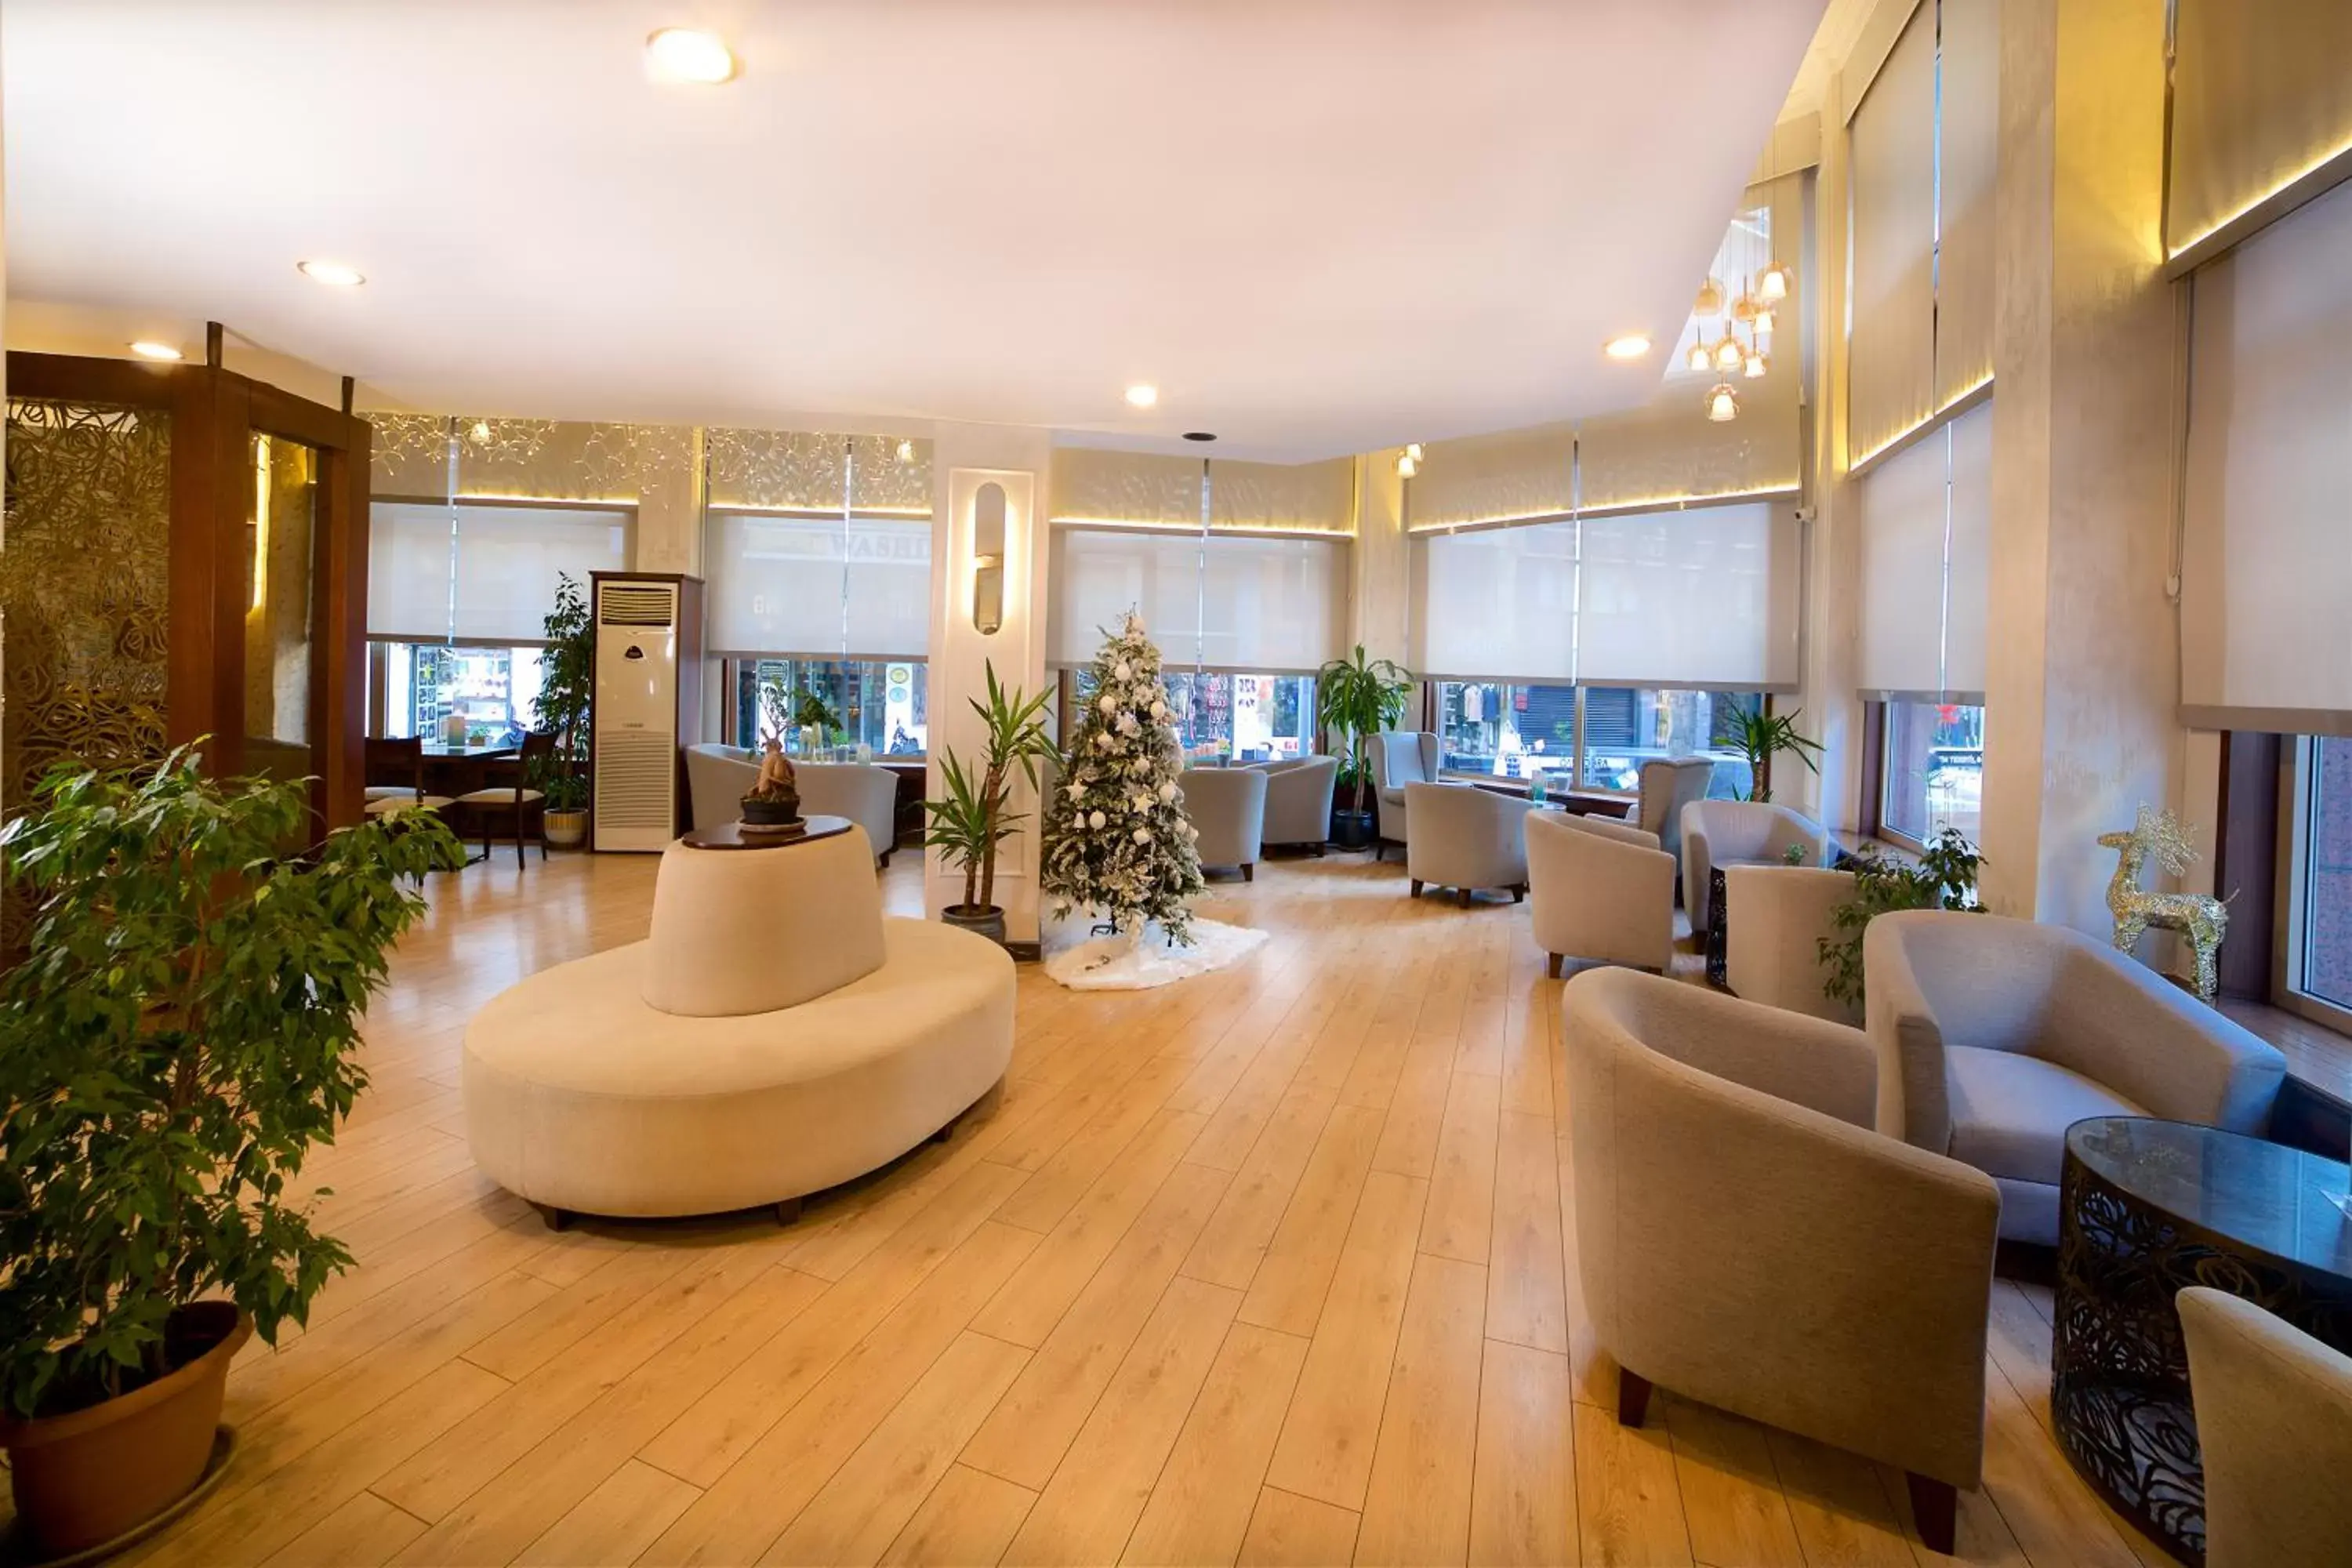 Lobby or reception, Lobby/Reception in Barin Hotel